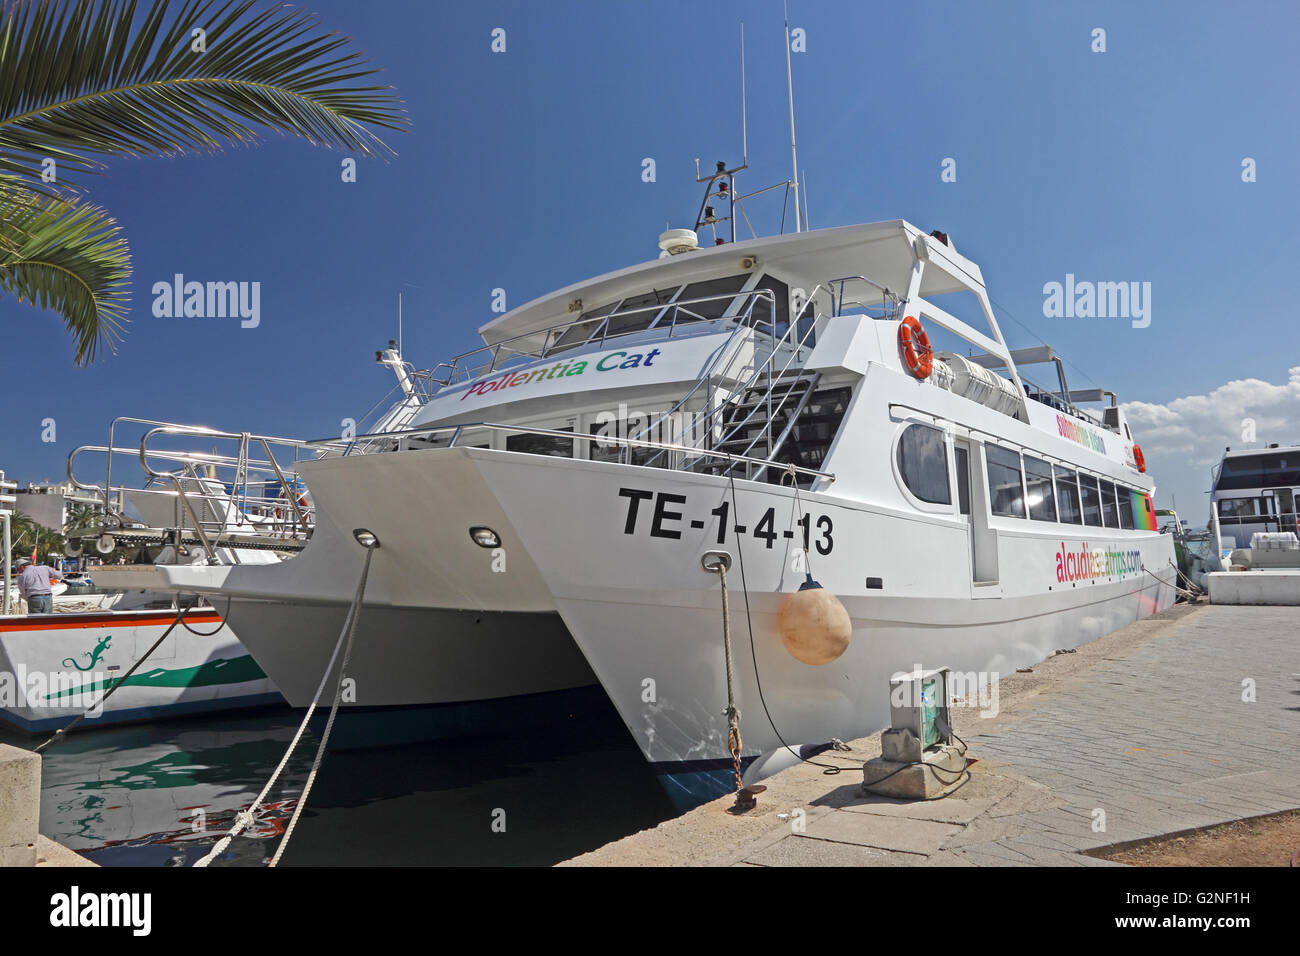 Pollentia Cat catamarán atracado en el muelle de Port d'Alcudia, Mallorca  Fotografía de stock - Alamy